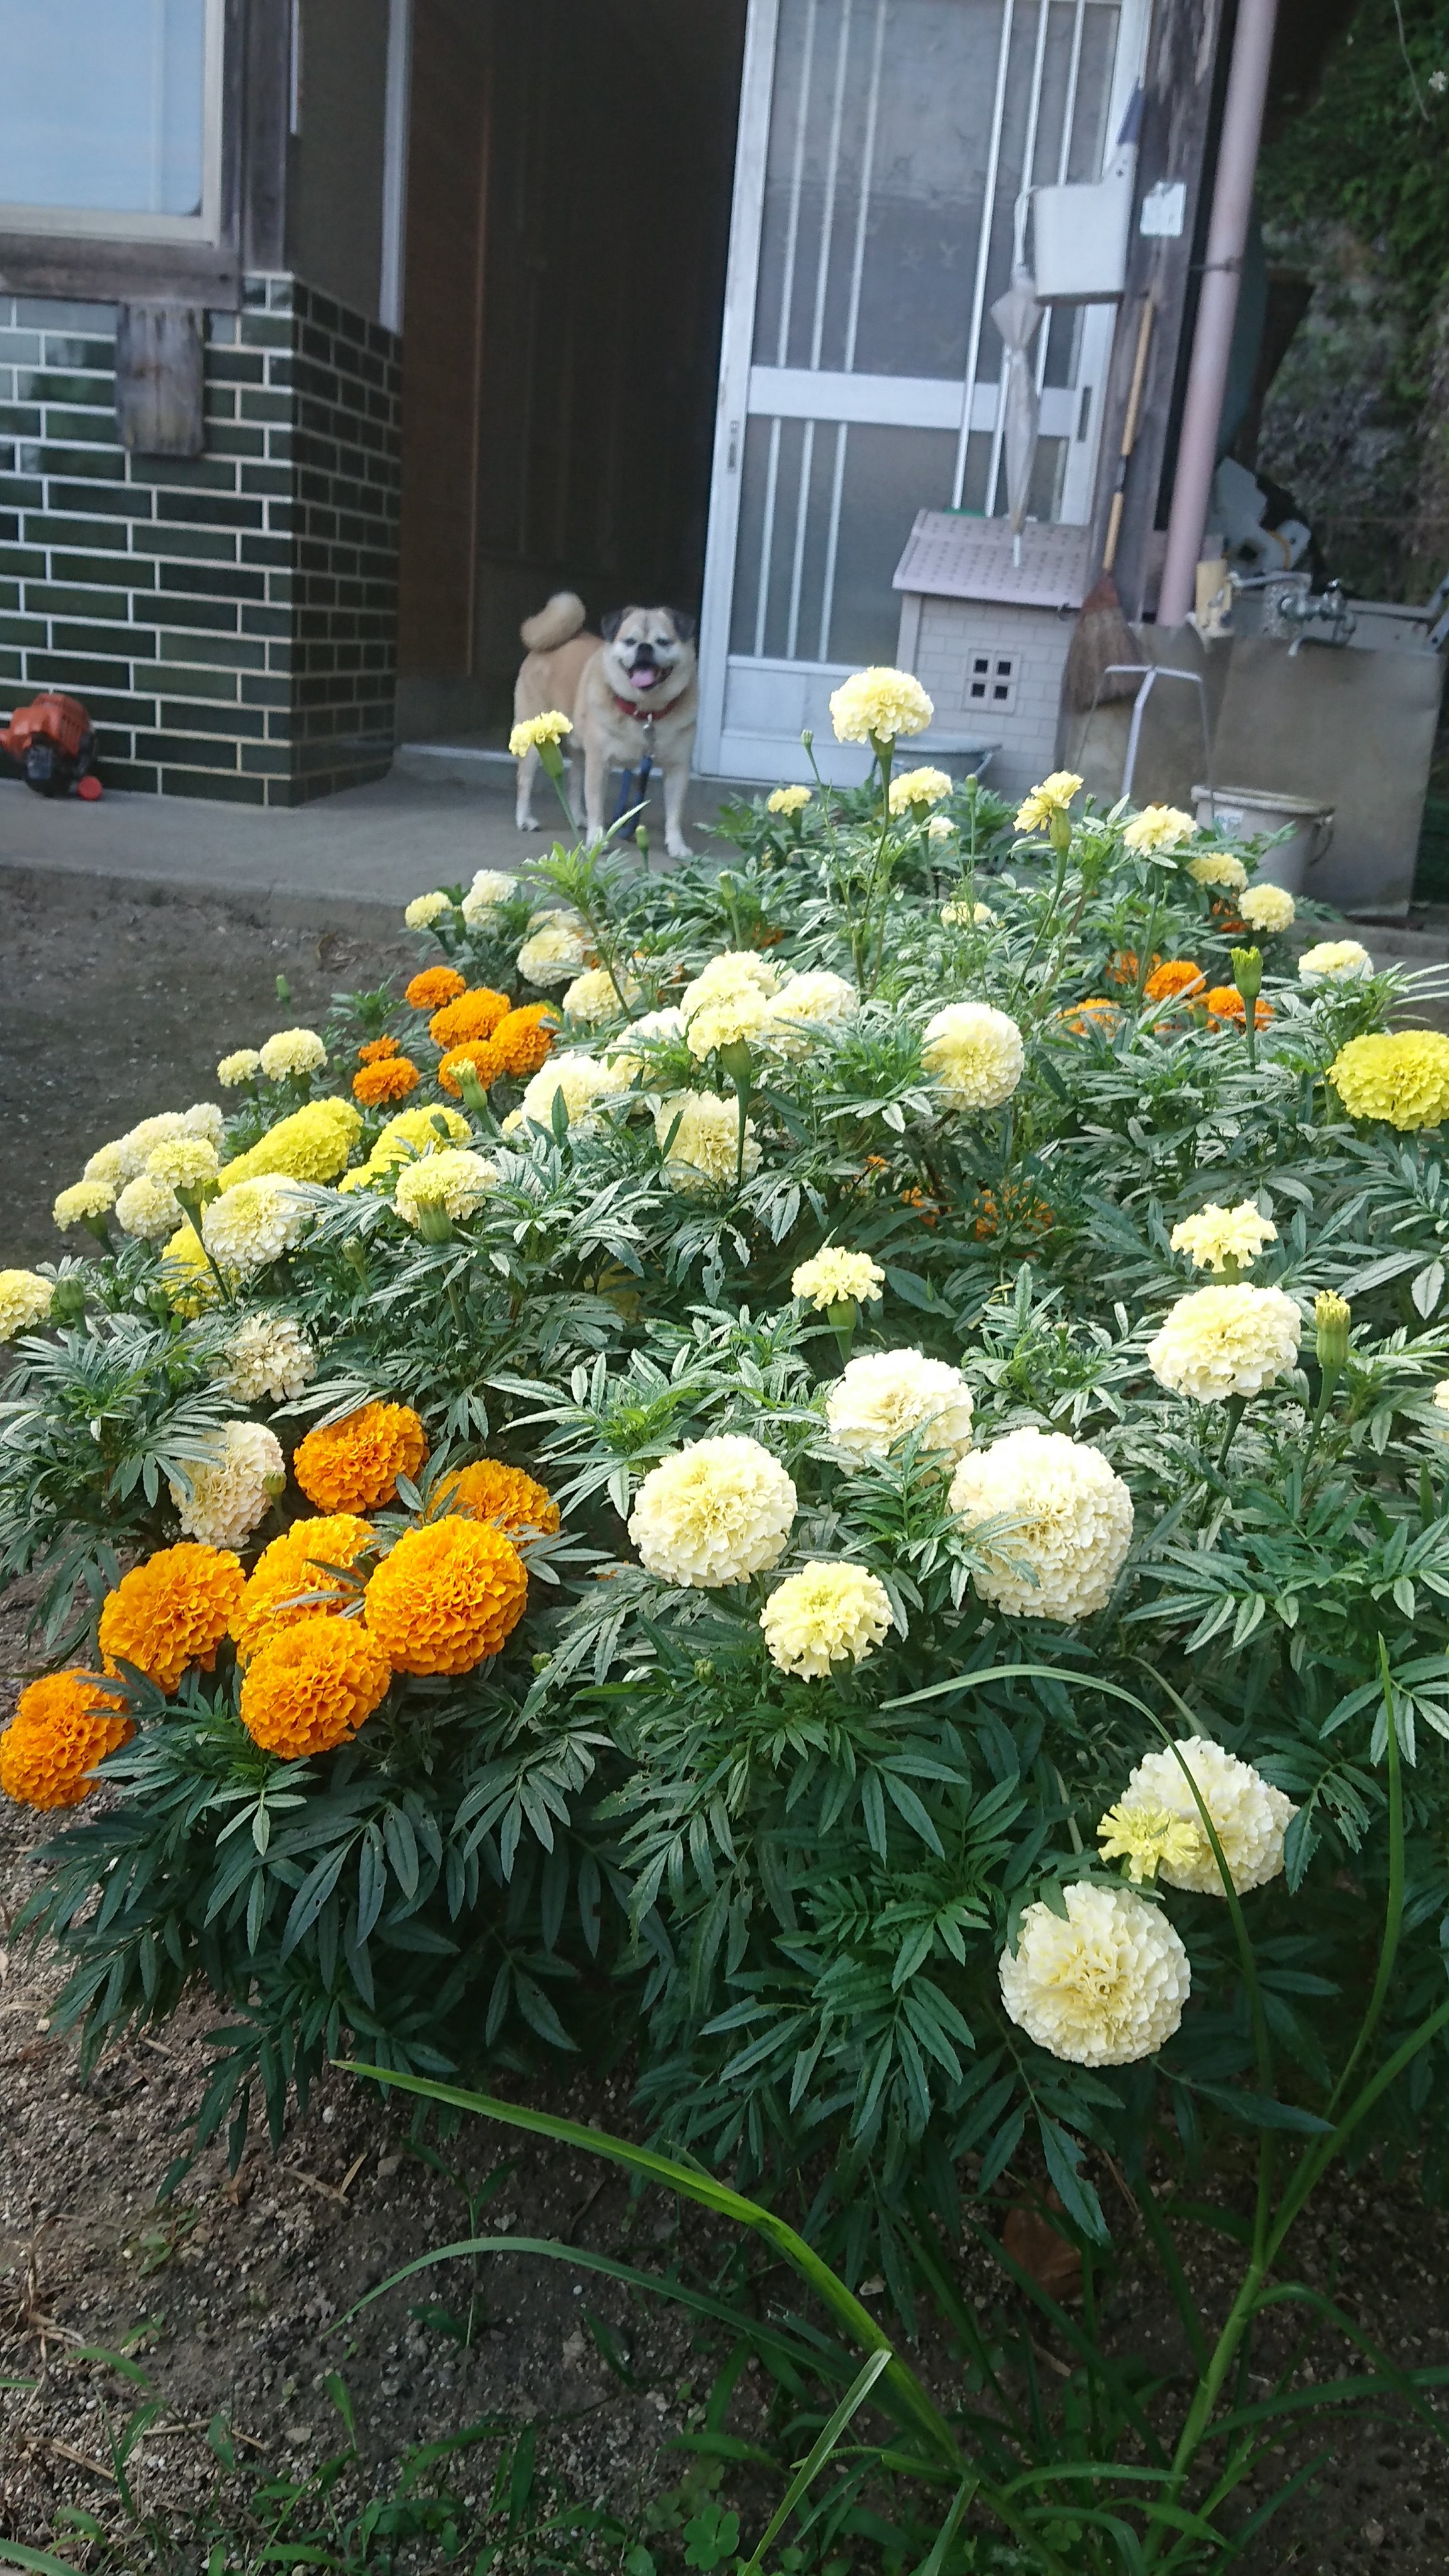 安田いちご園 ぱじぇろみに うちの花壇に植えたマリーゴールドが綺麗に咲きました マリーゴールド アフリカン マリーゴールド T Co D6fkomp32x Twitter